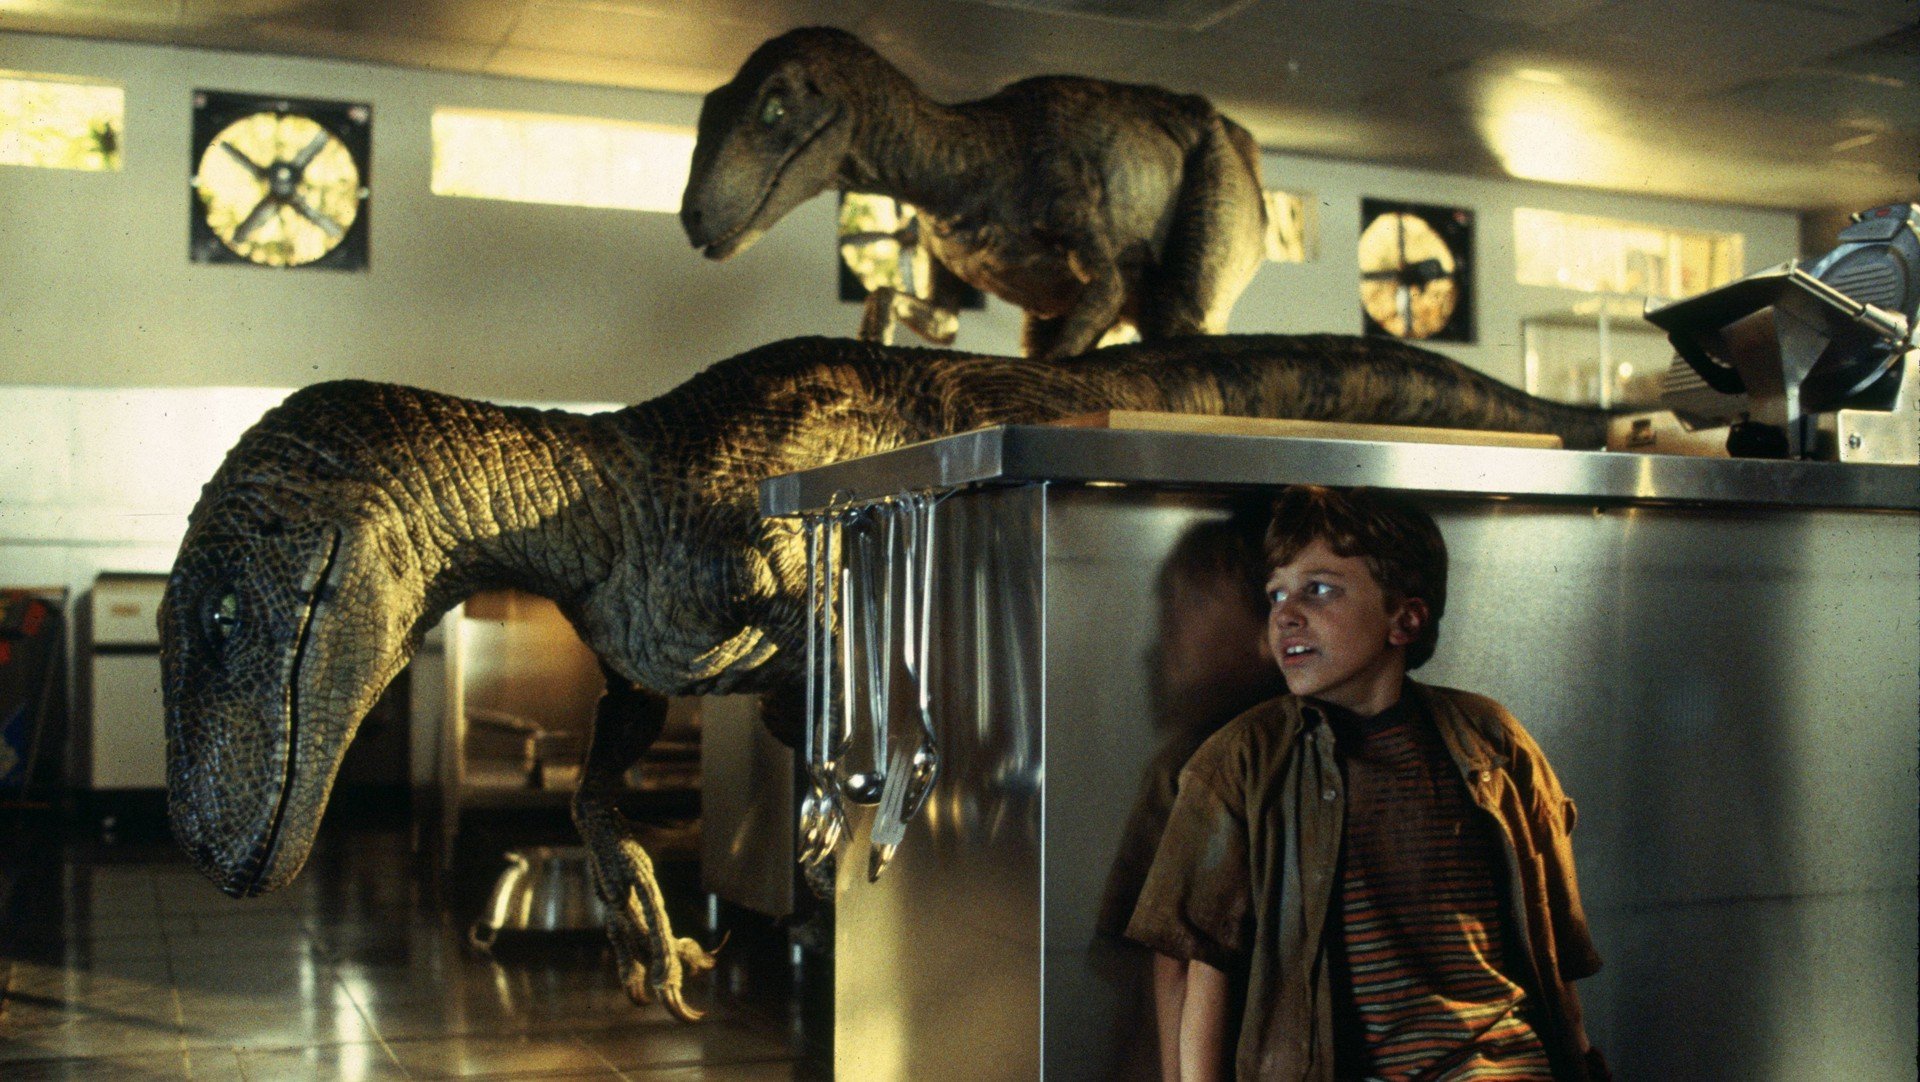 Si tu dinosaurio favorito de 'Jurassic Park' es el Velociraptor, eres fan de una equivocación